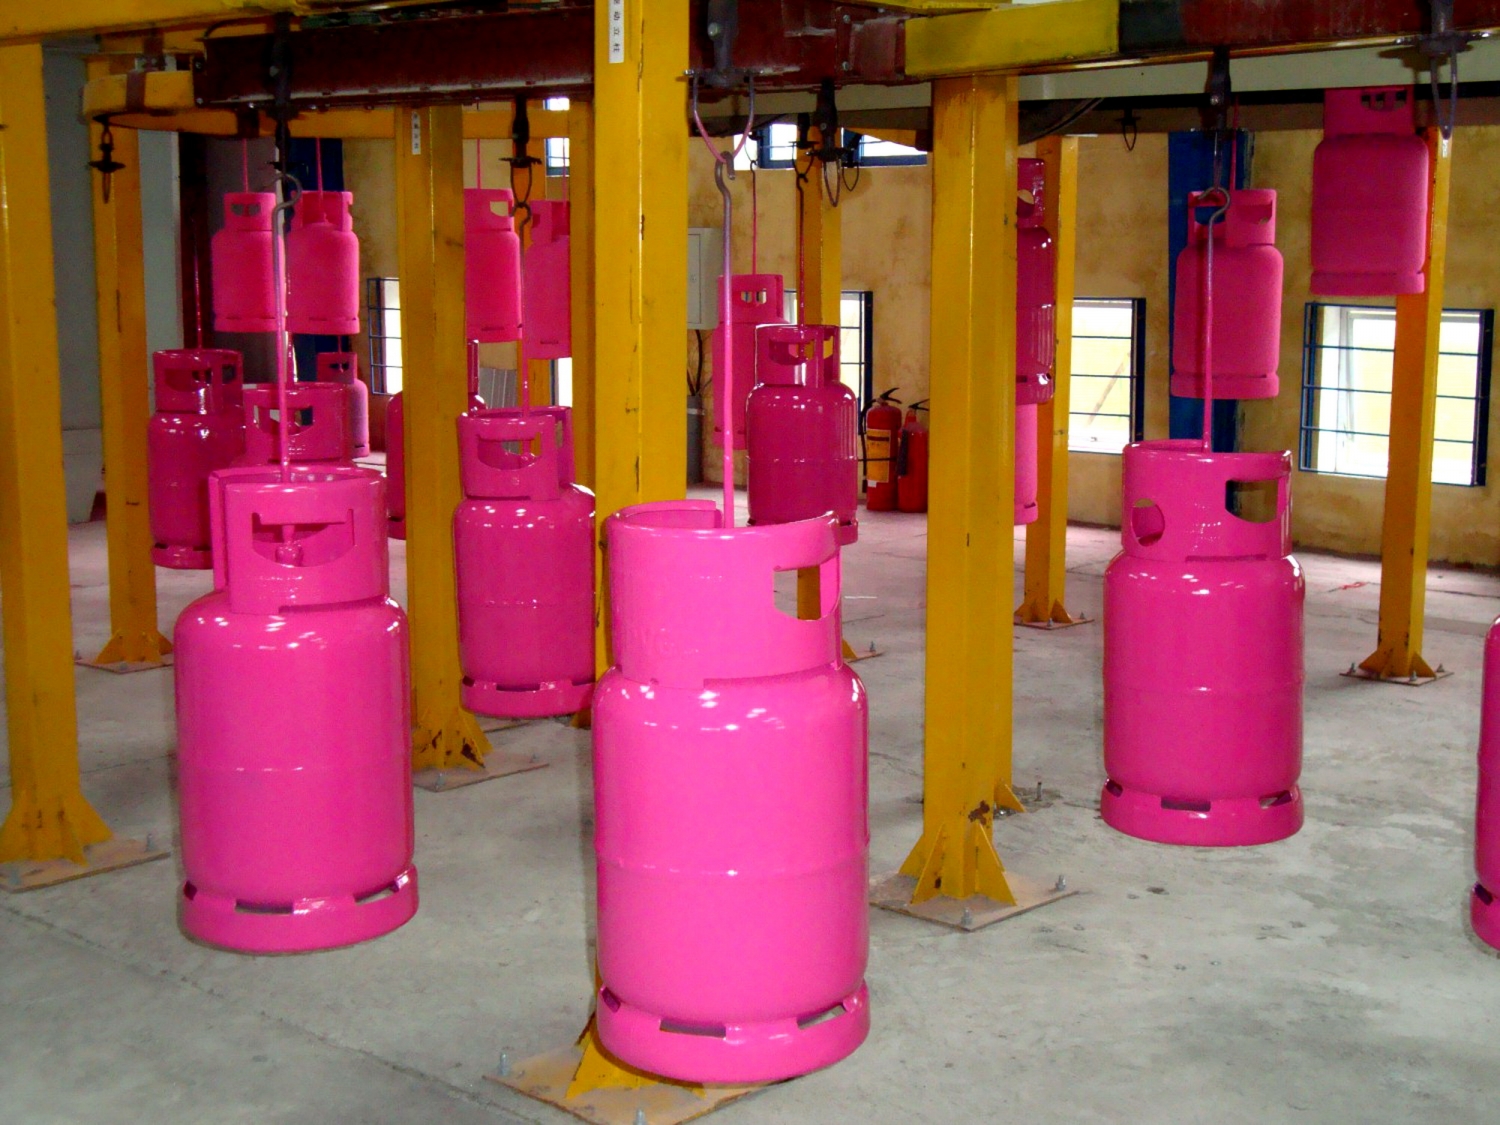 Bình gas hồng được kiểm tra và làm mới tại Trung tâm sơn sửa kiểm định bình gas của PV GAS LPG tại Đà Nẵng